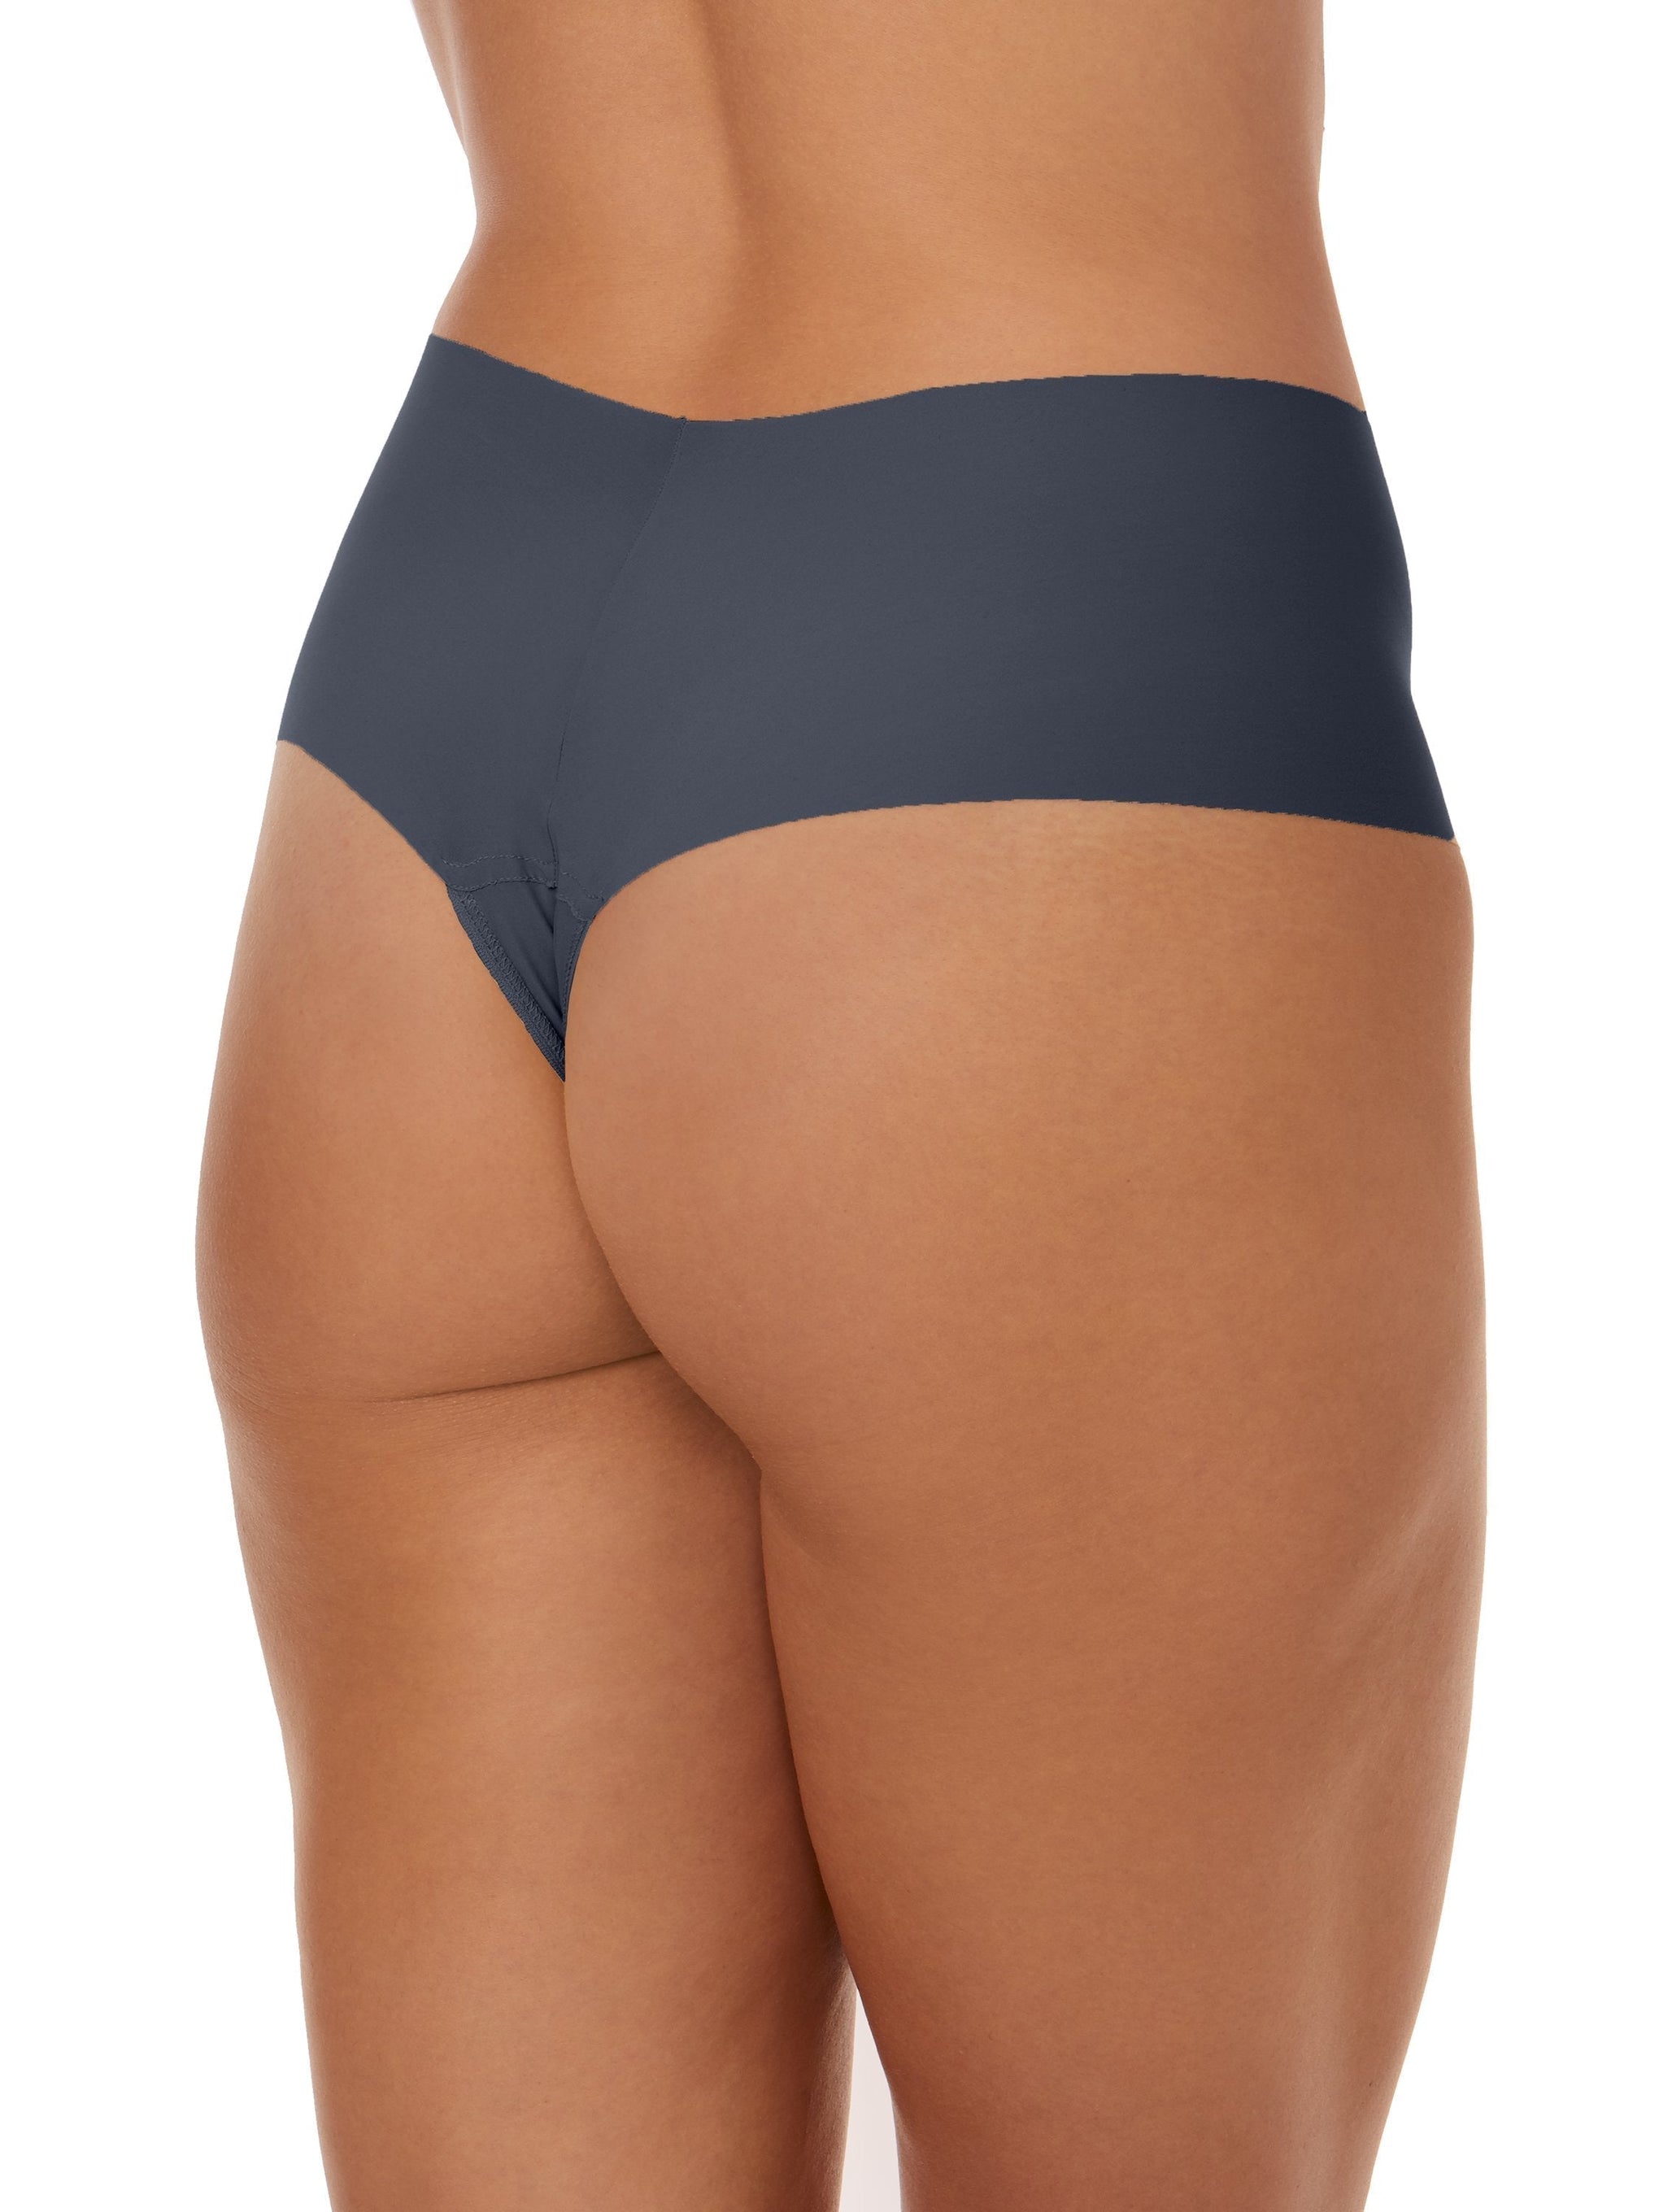 New Balance Women's Breathe mesh Ultra Lightweight Thong Underwear (Pack of  1)